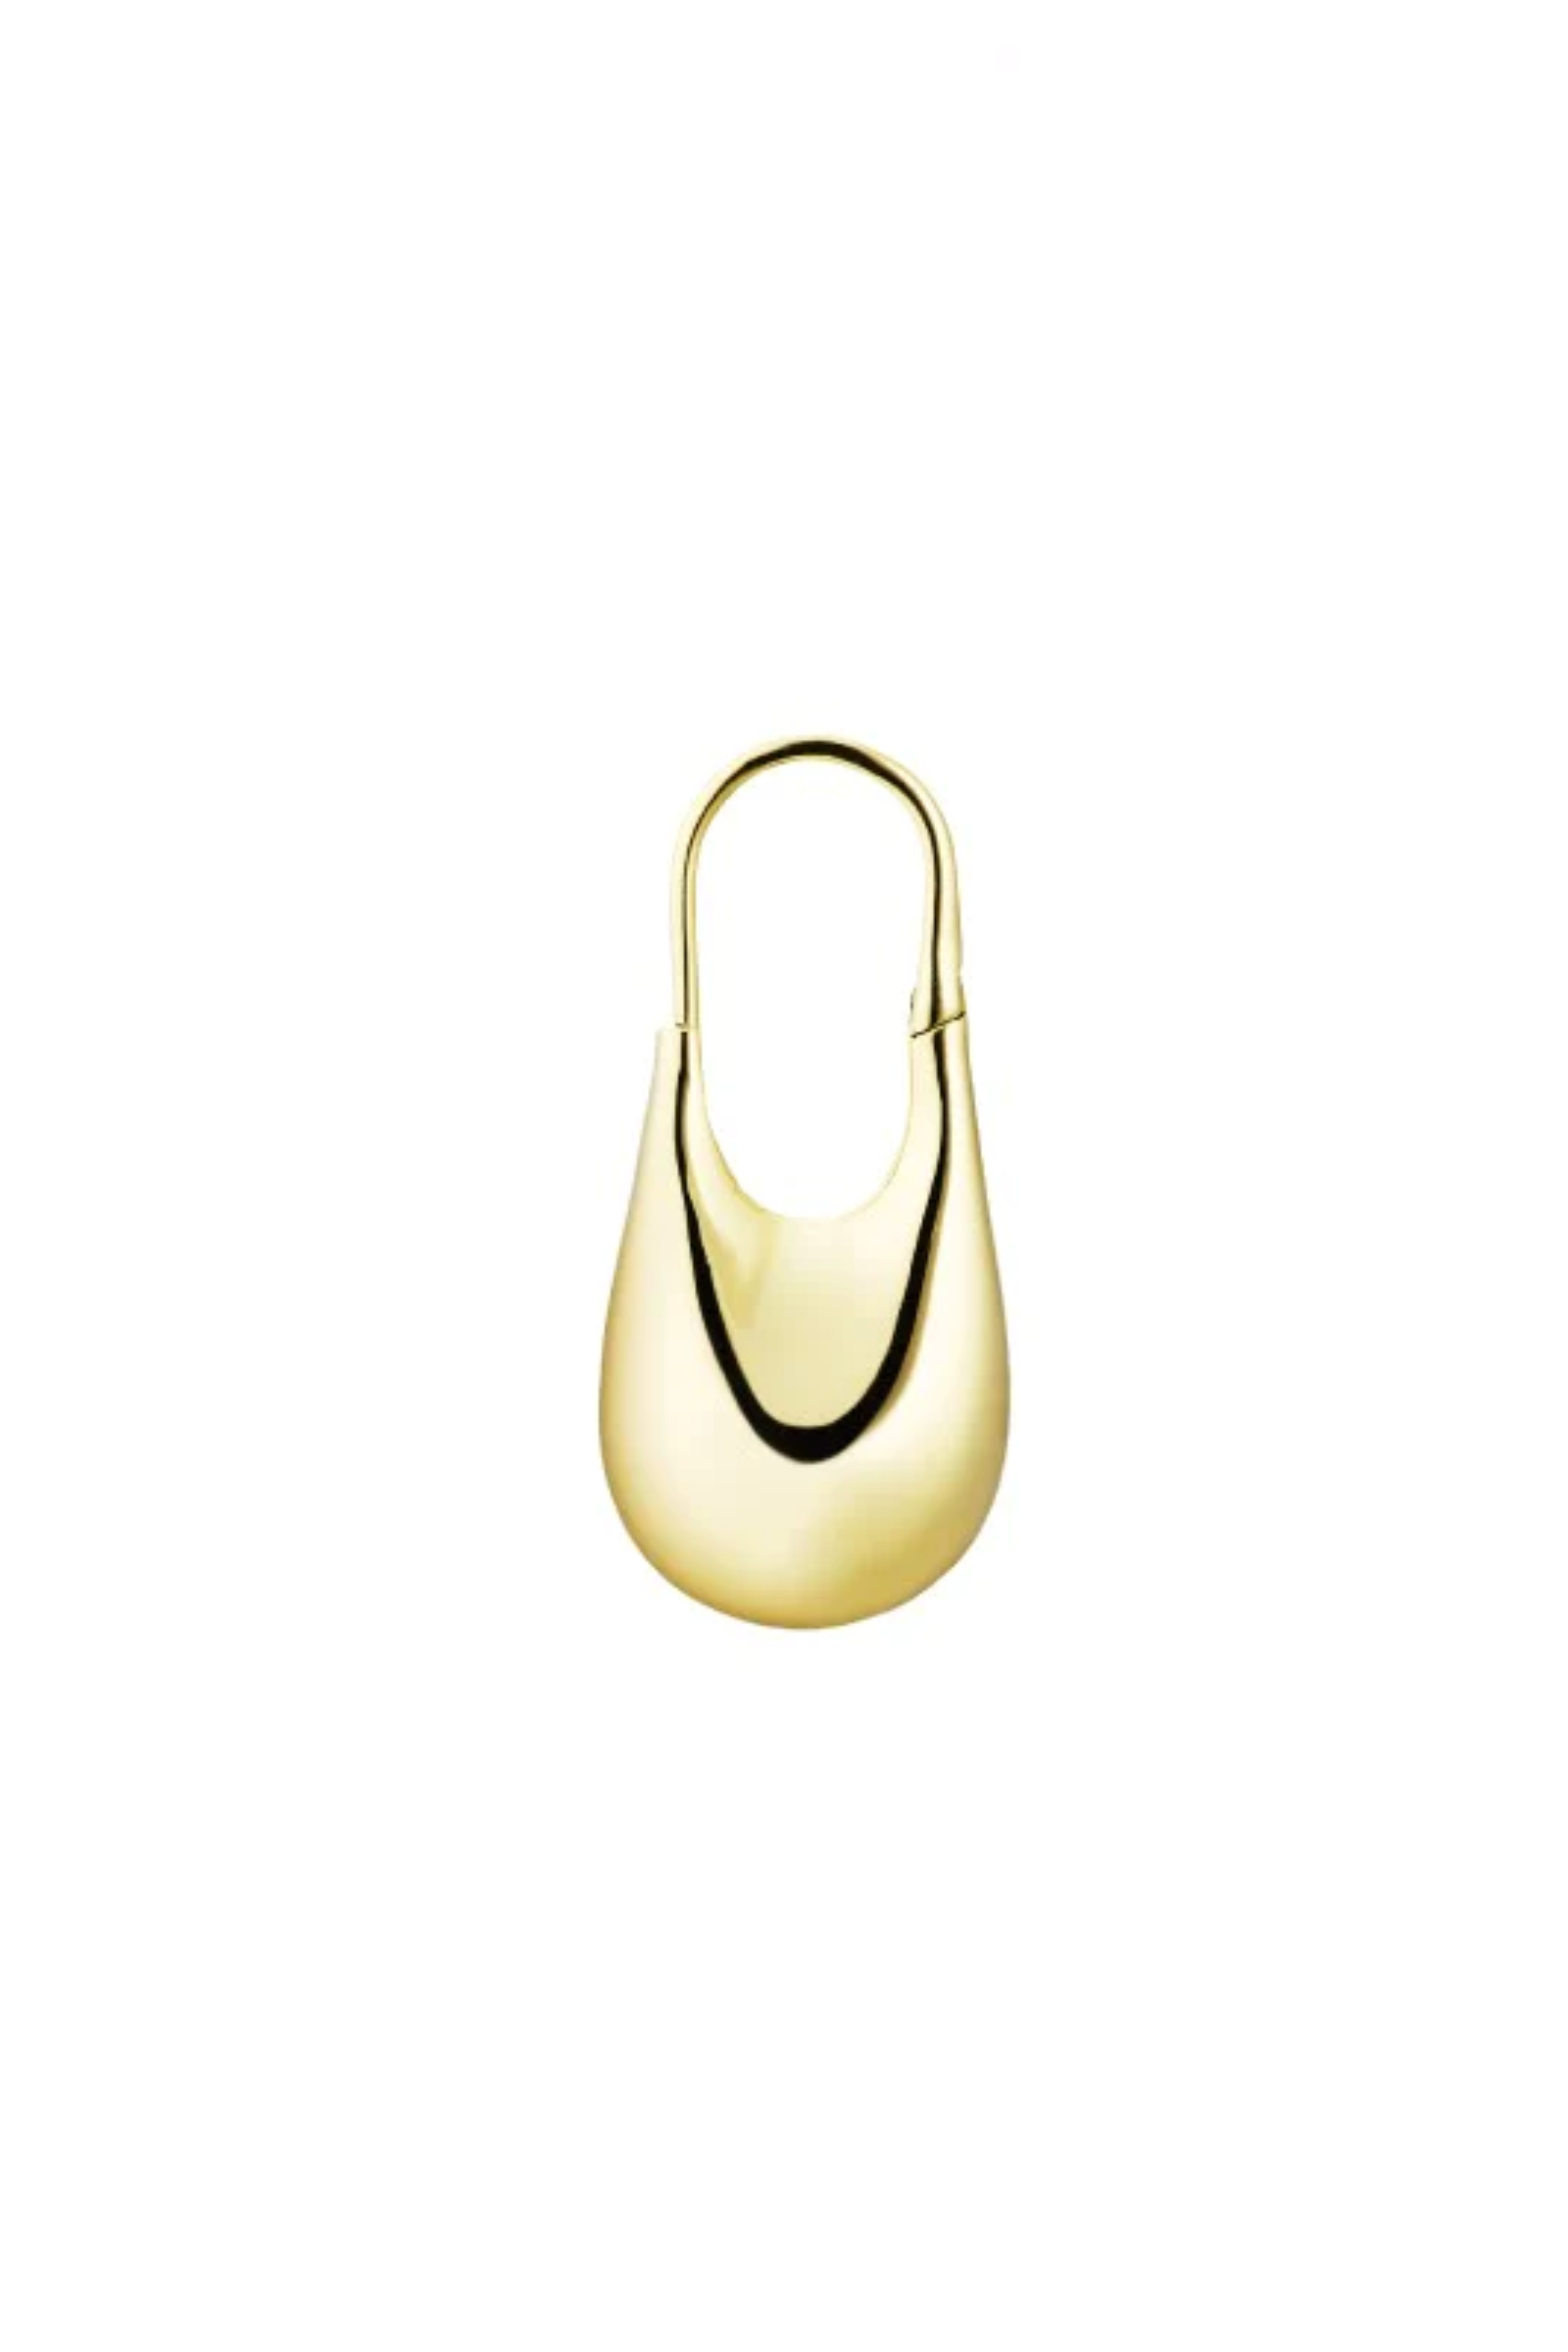 KINRADEN Doric Gold Earring